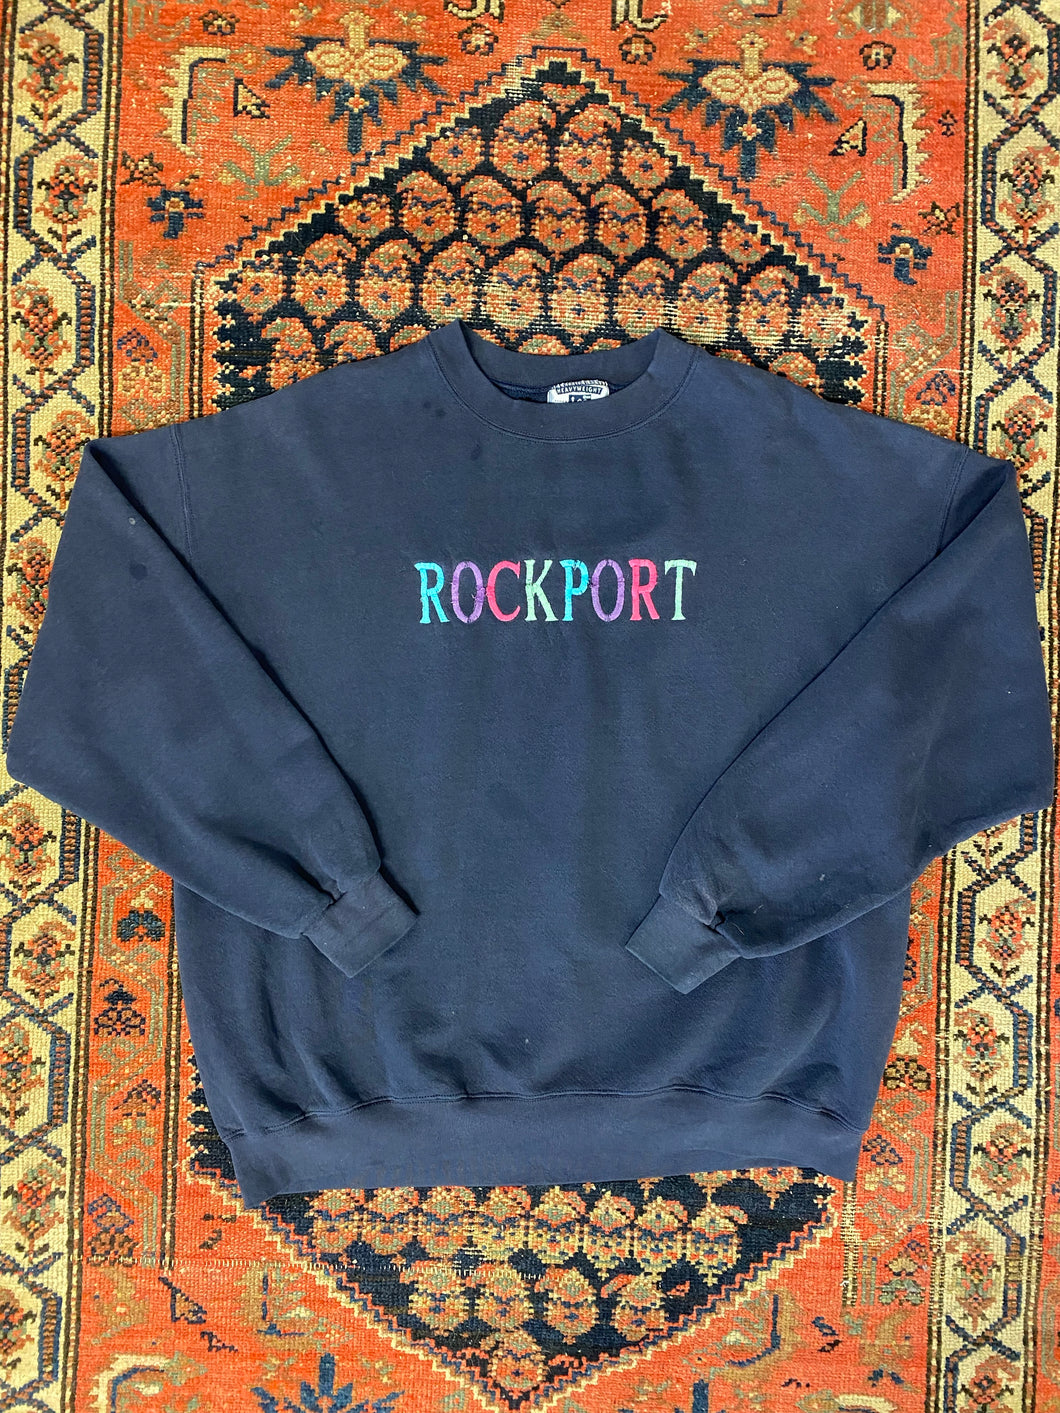 Vintage Embroidered Rockport Crewneck - L